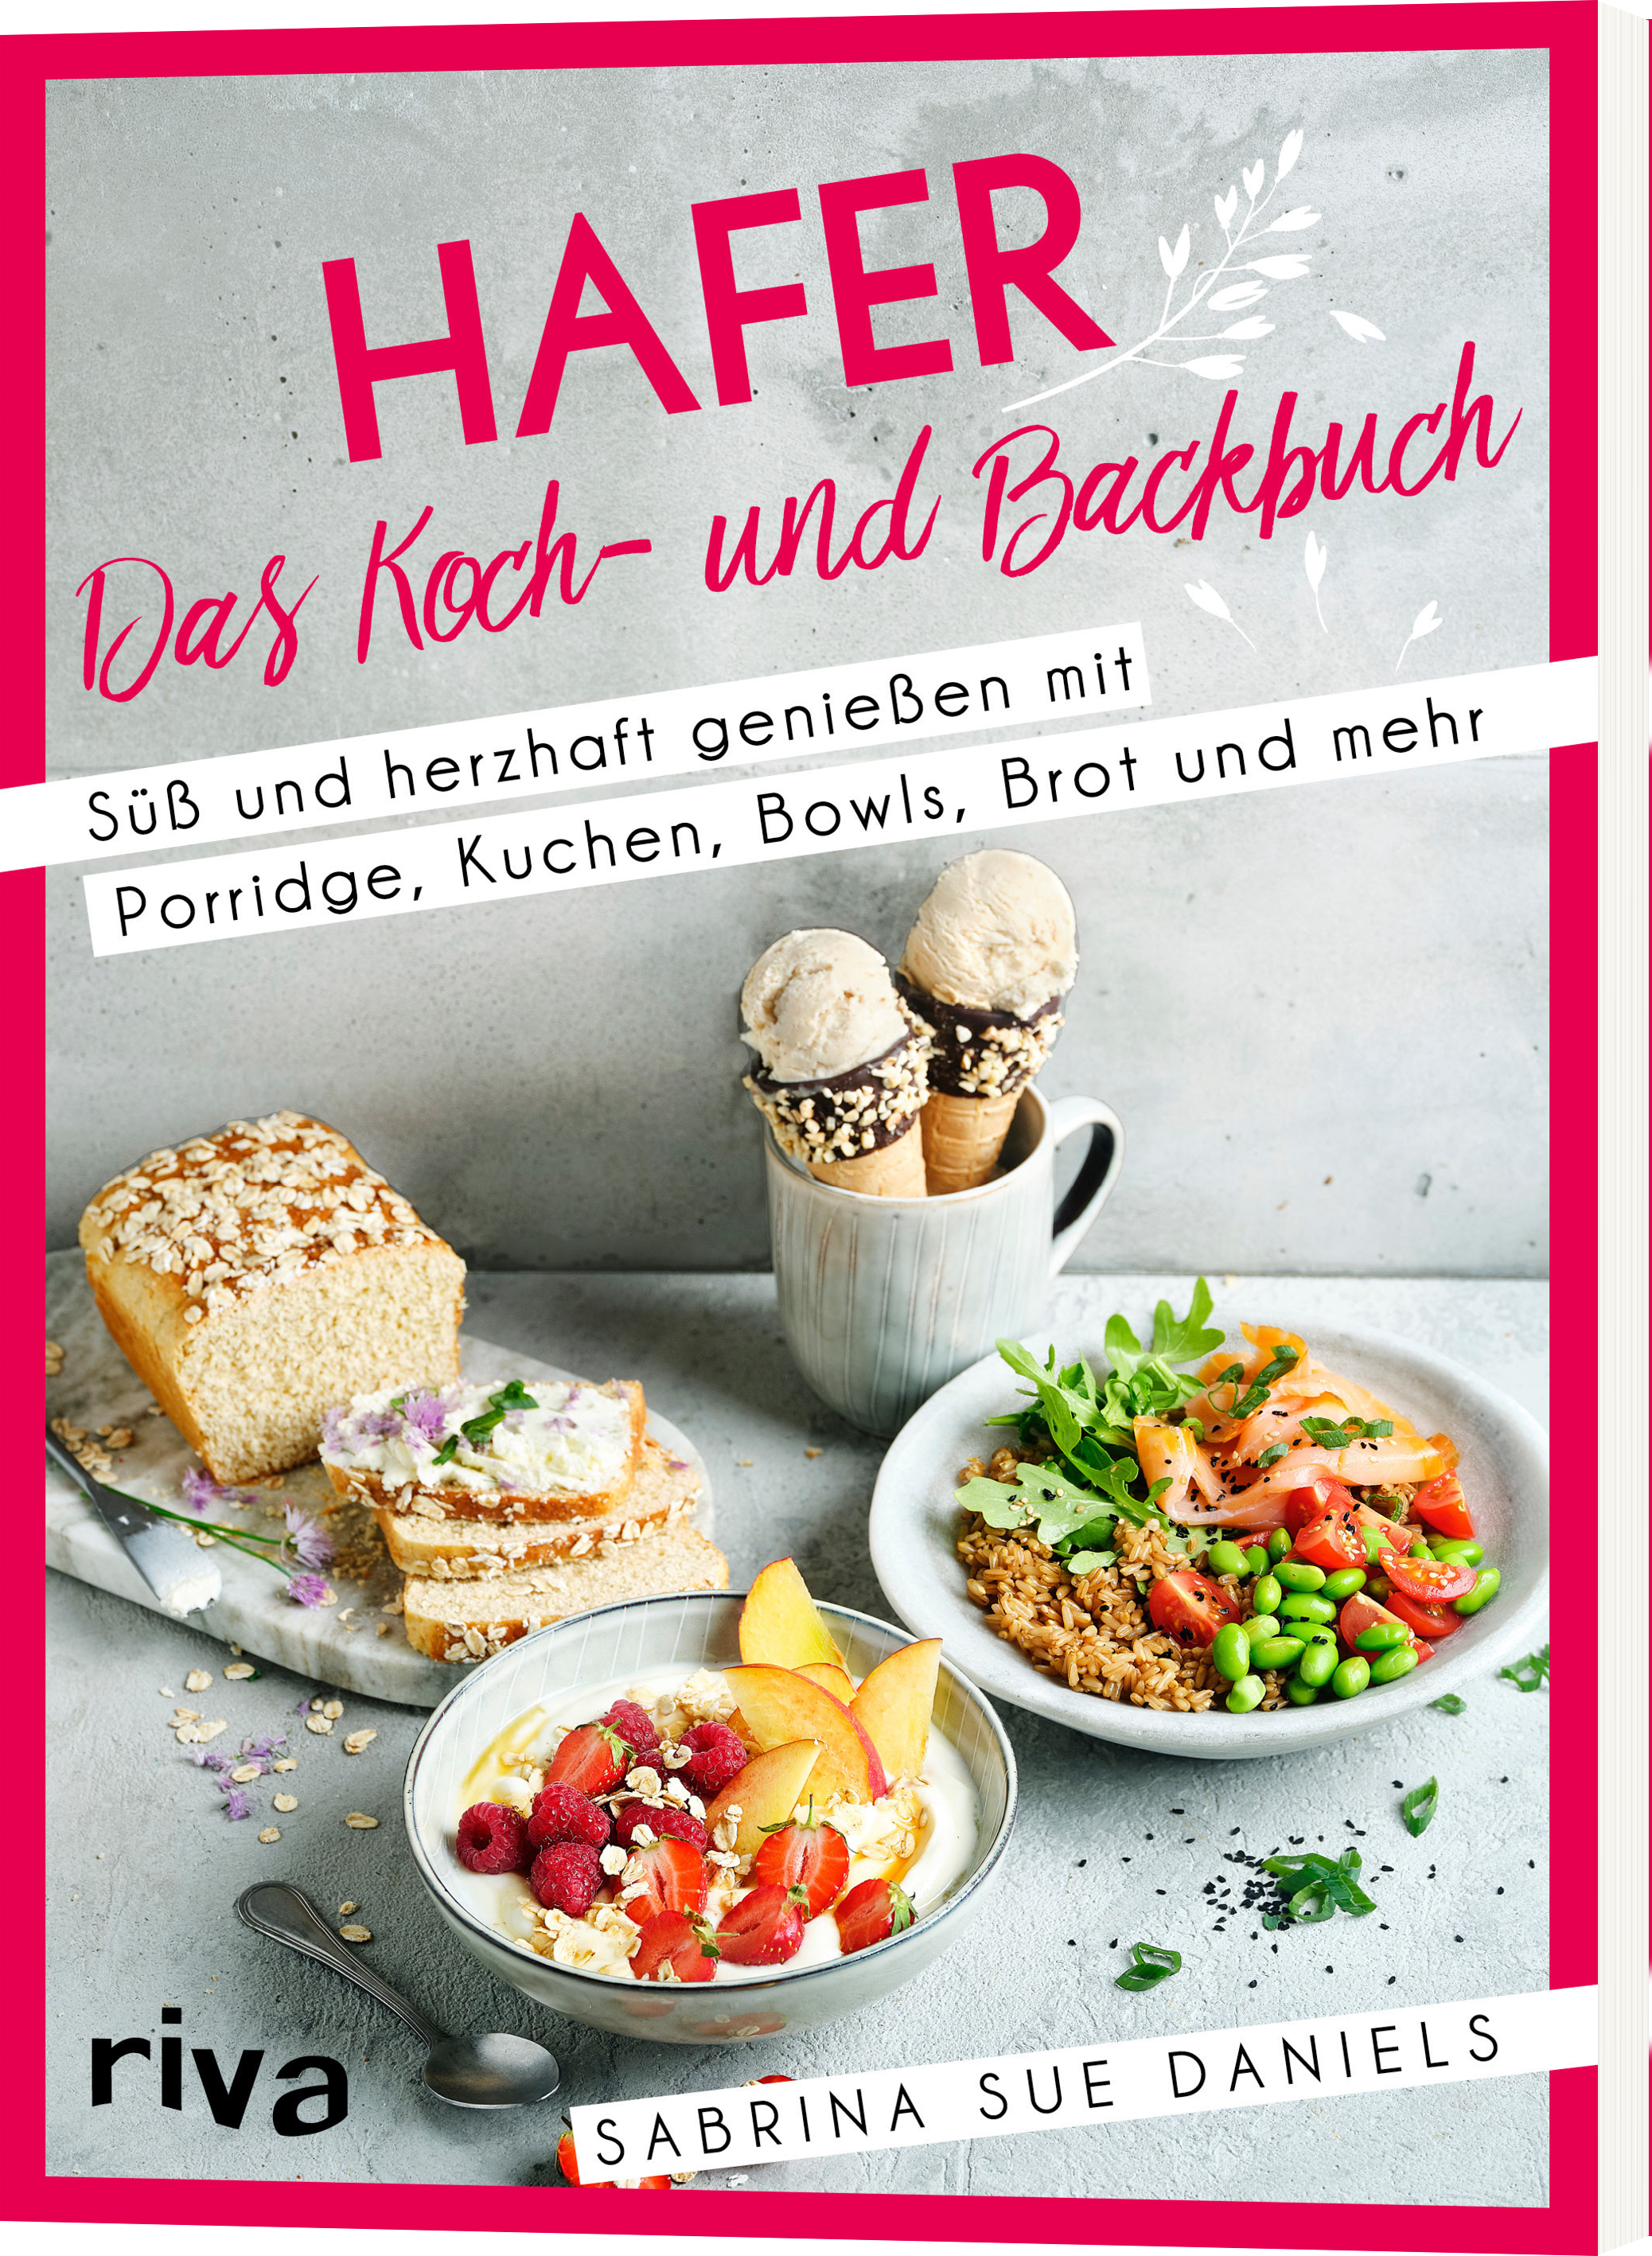 Hafer: Das Koch- und Backbuch